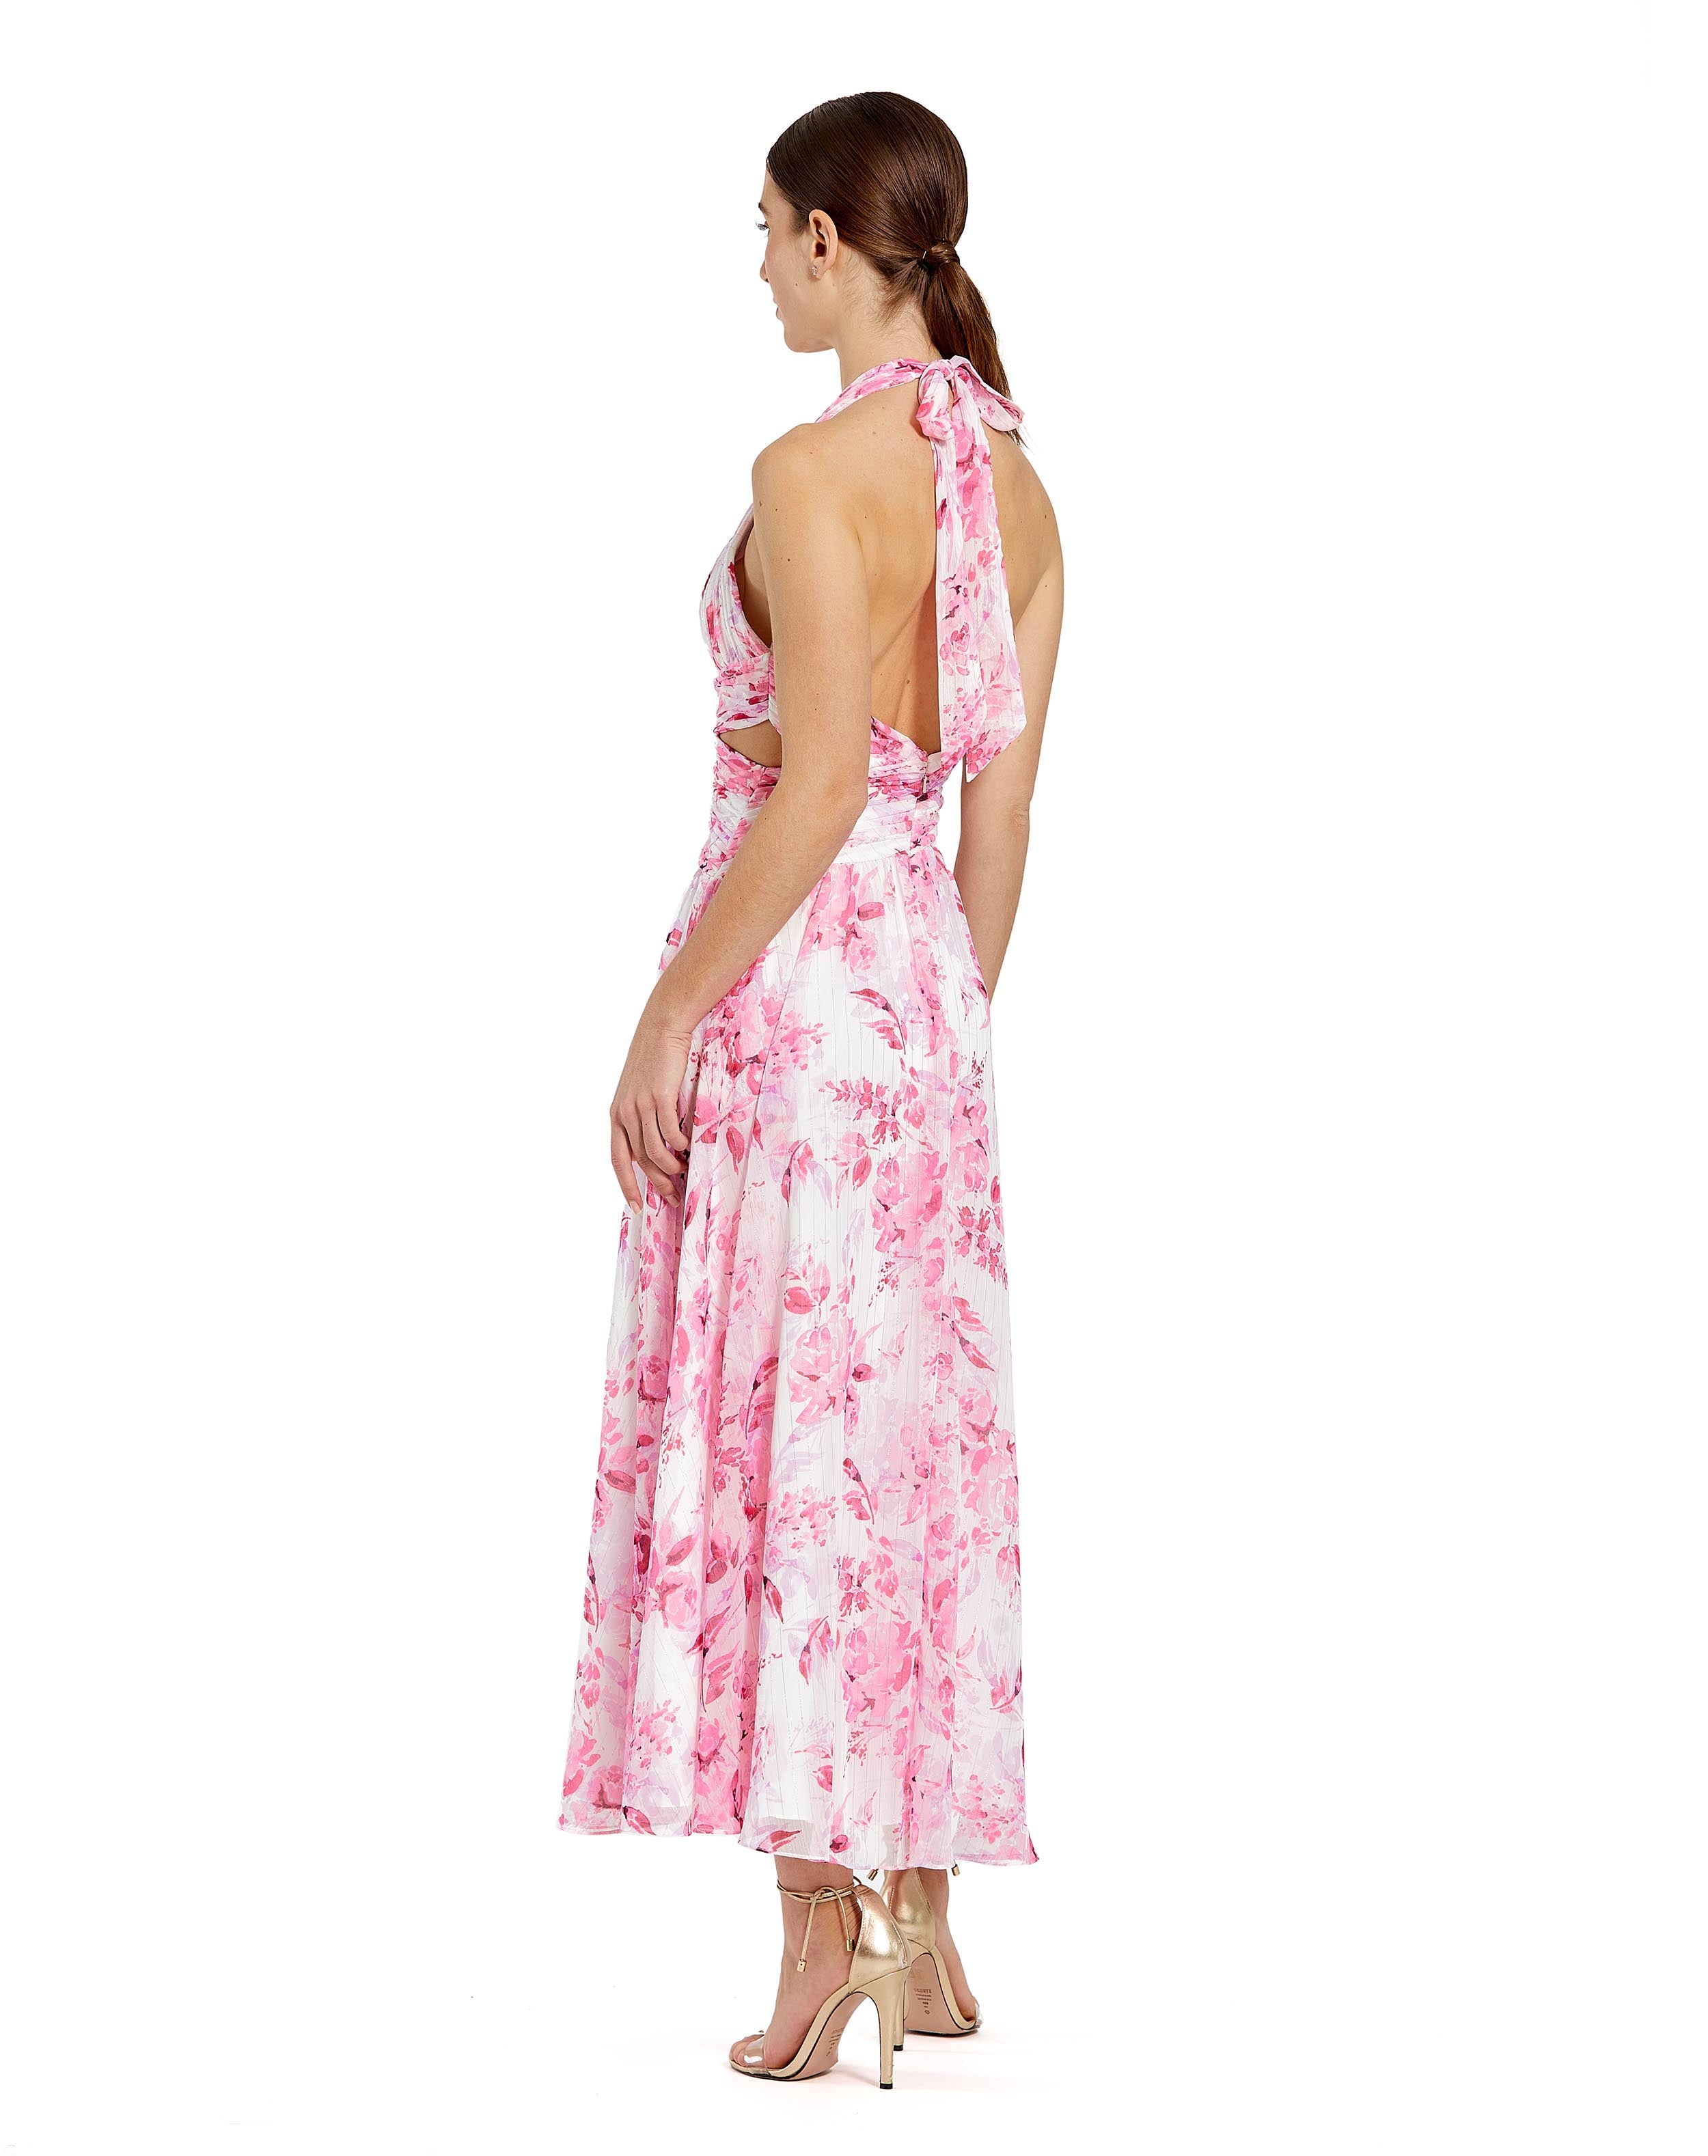 Halter Neck Floral Dress | Sample | Sz. 2